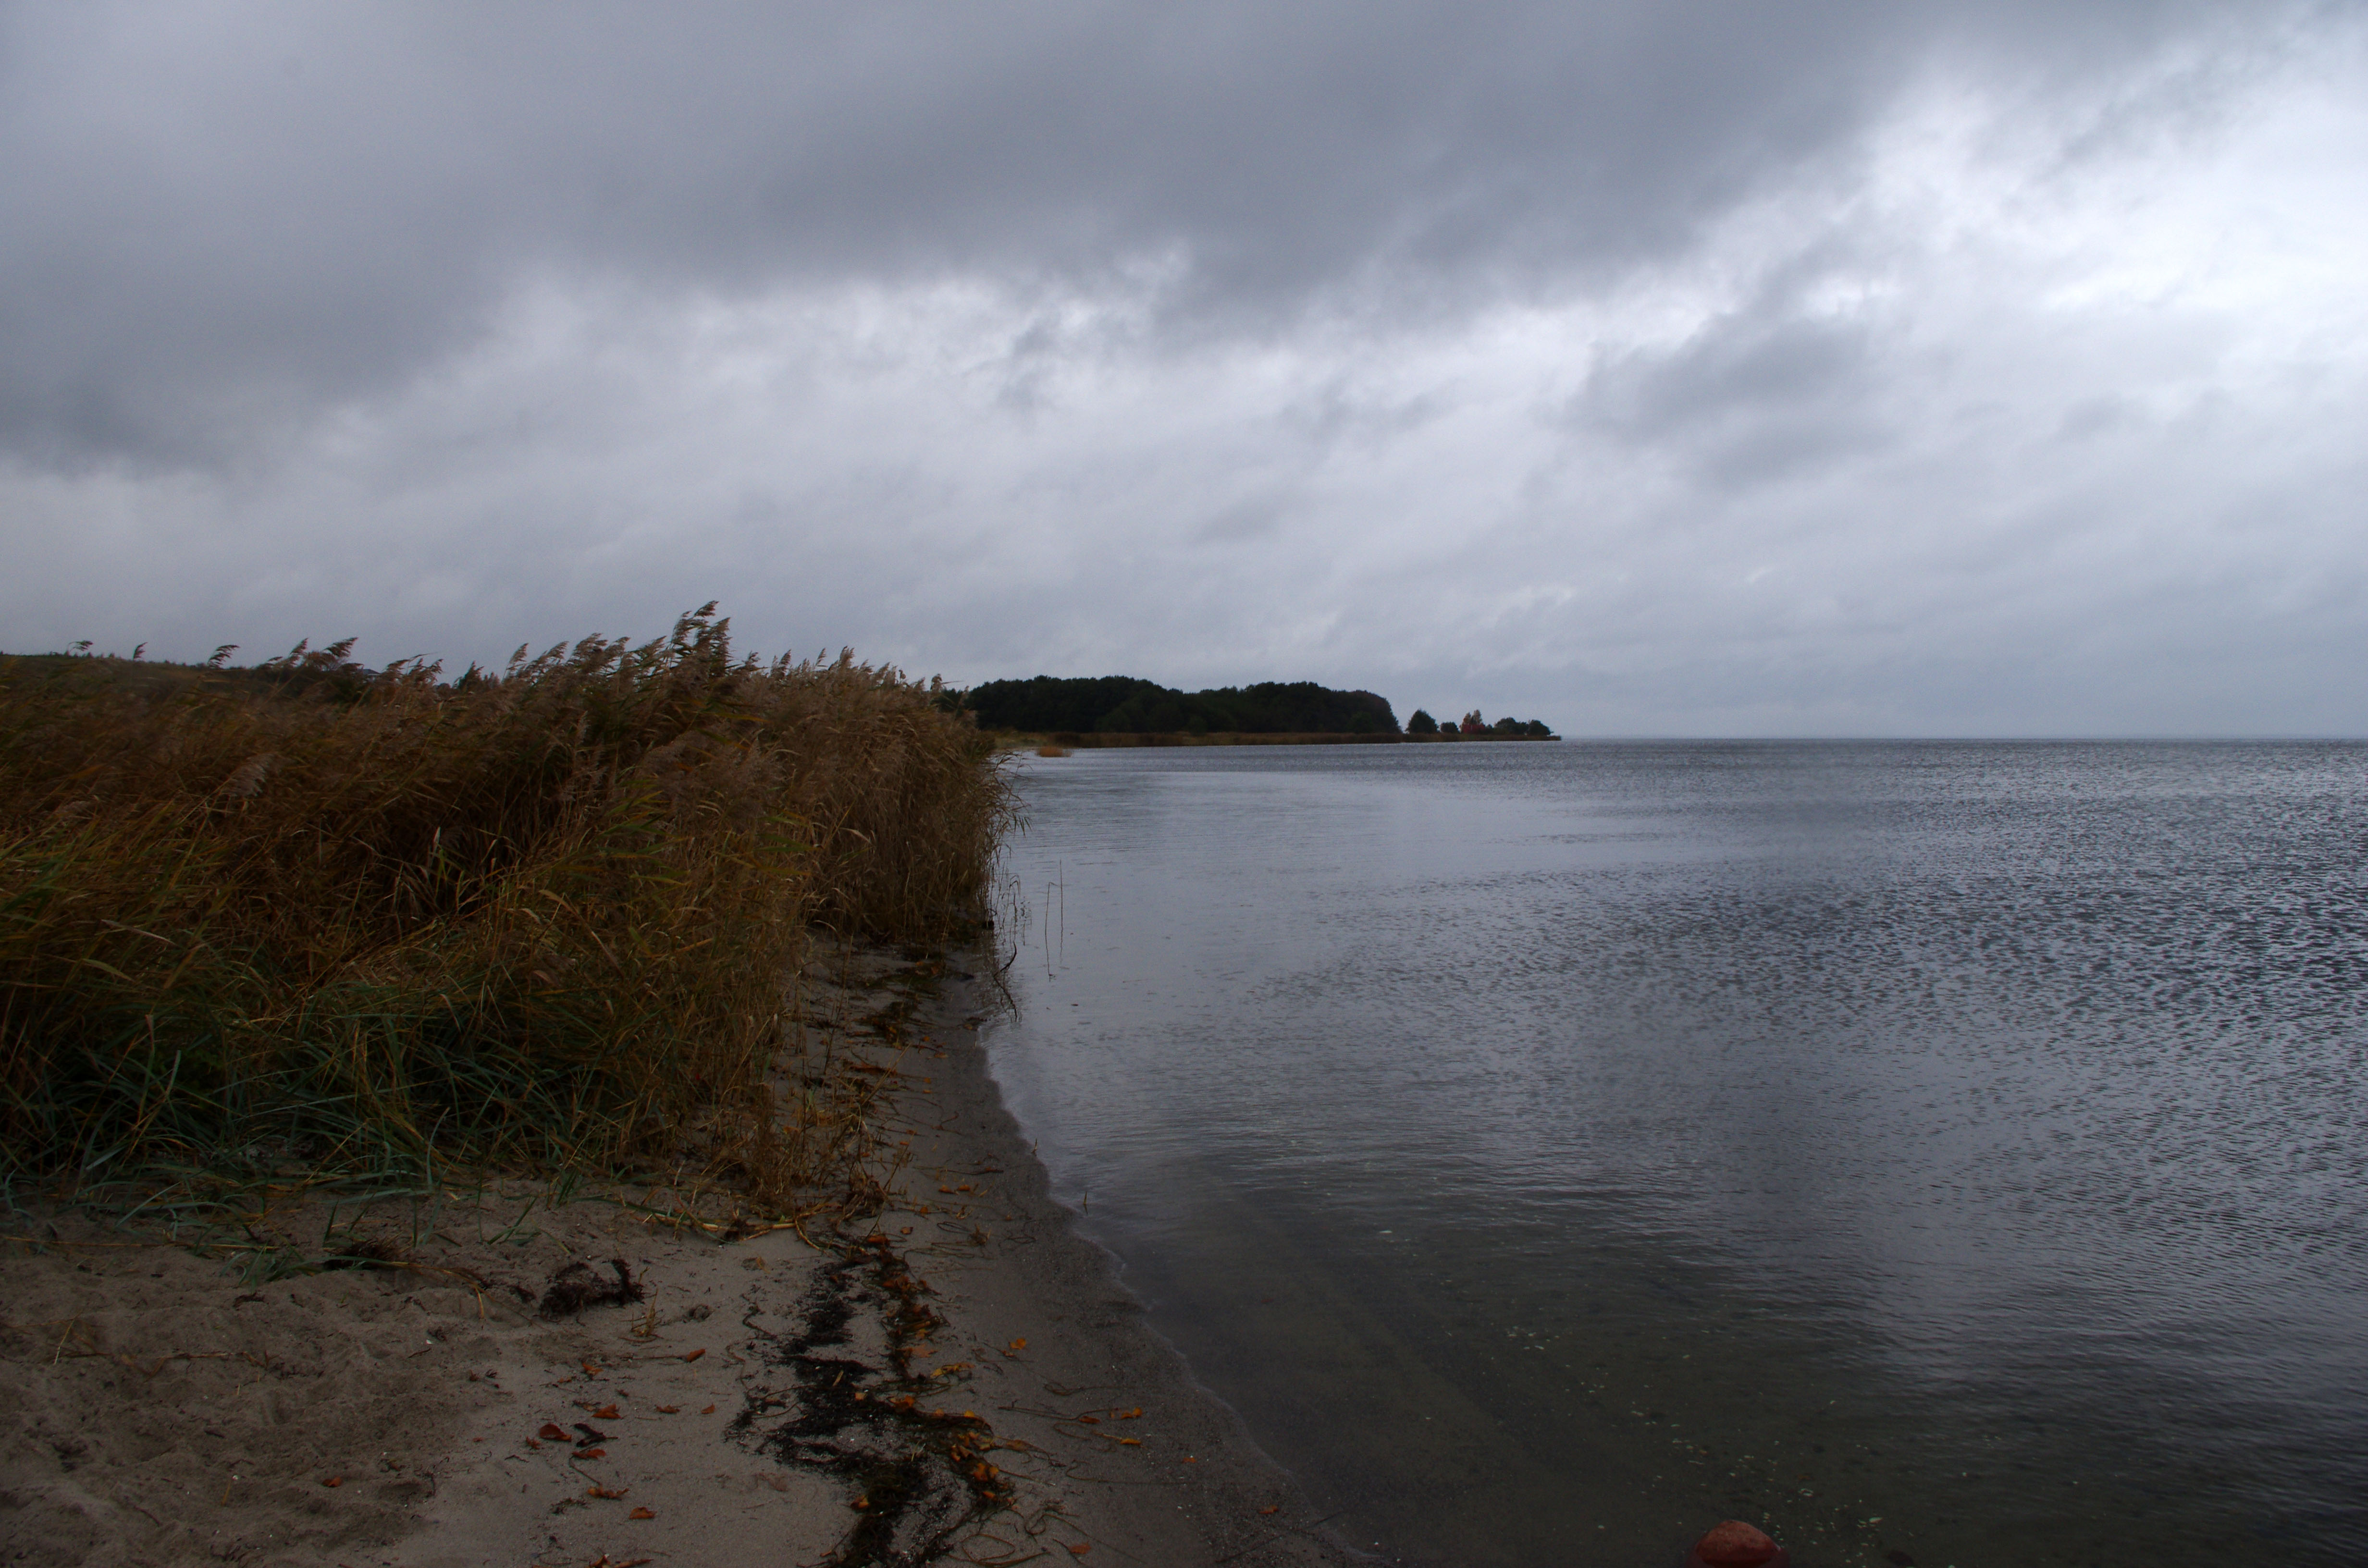 Na zdjęciu widać plażę porośniętą trzcinami graniczącą z dużą płytką zatoką należącą do morza Bałtyckiego.